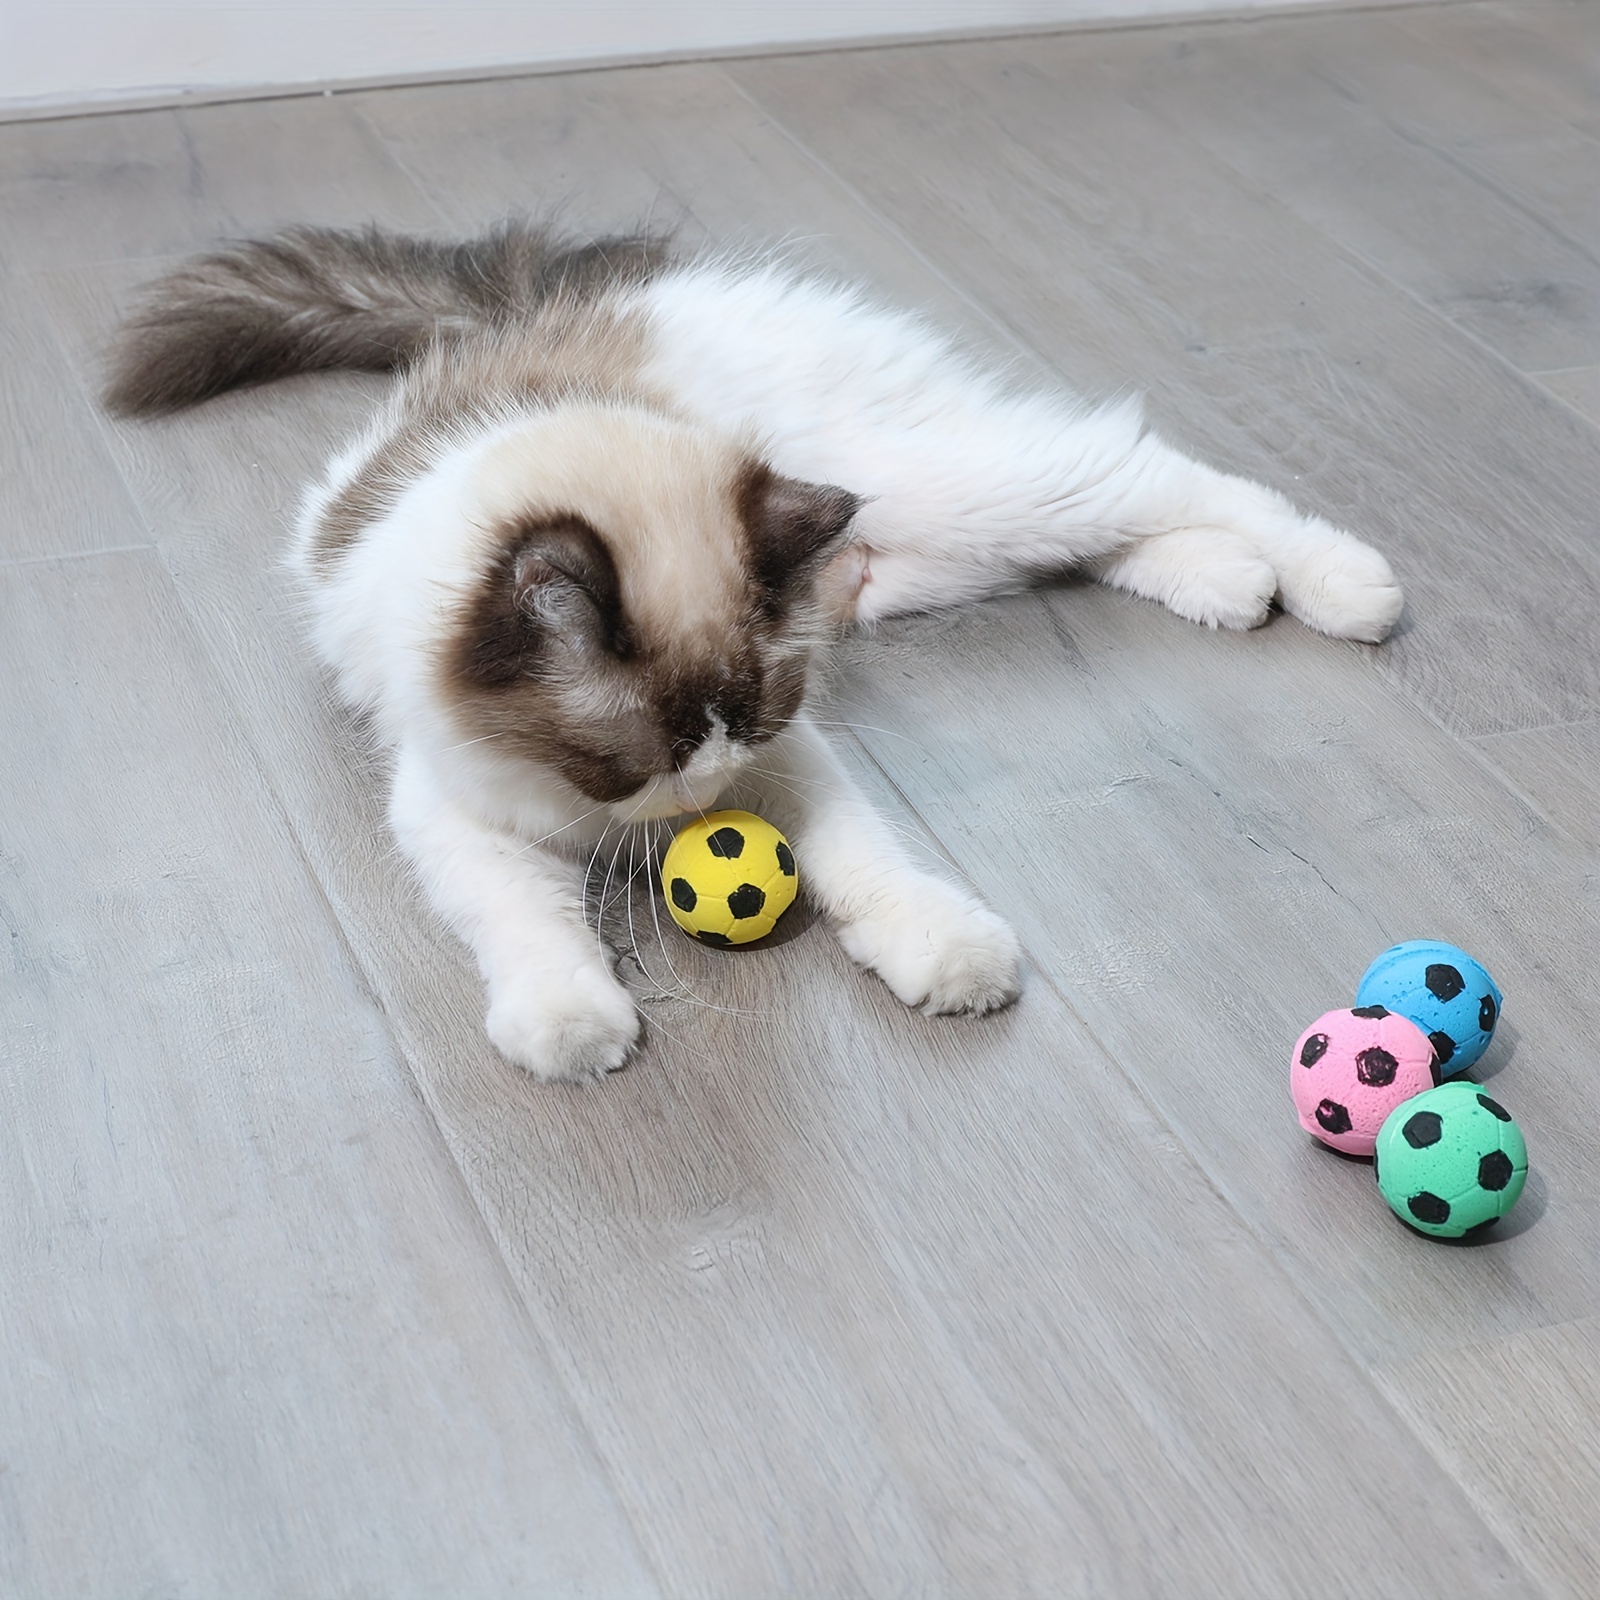 1 pièce chat jouet balles en mousse chat ballon de football jouets